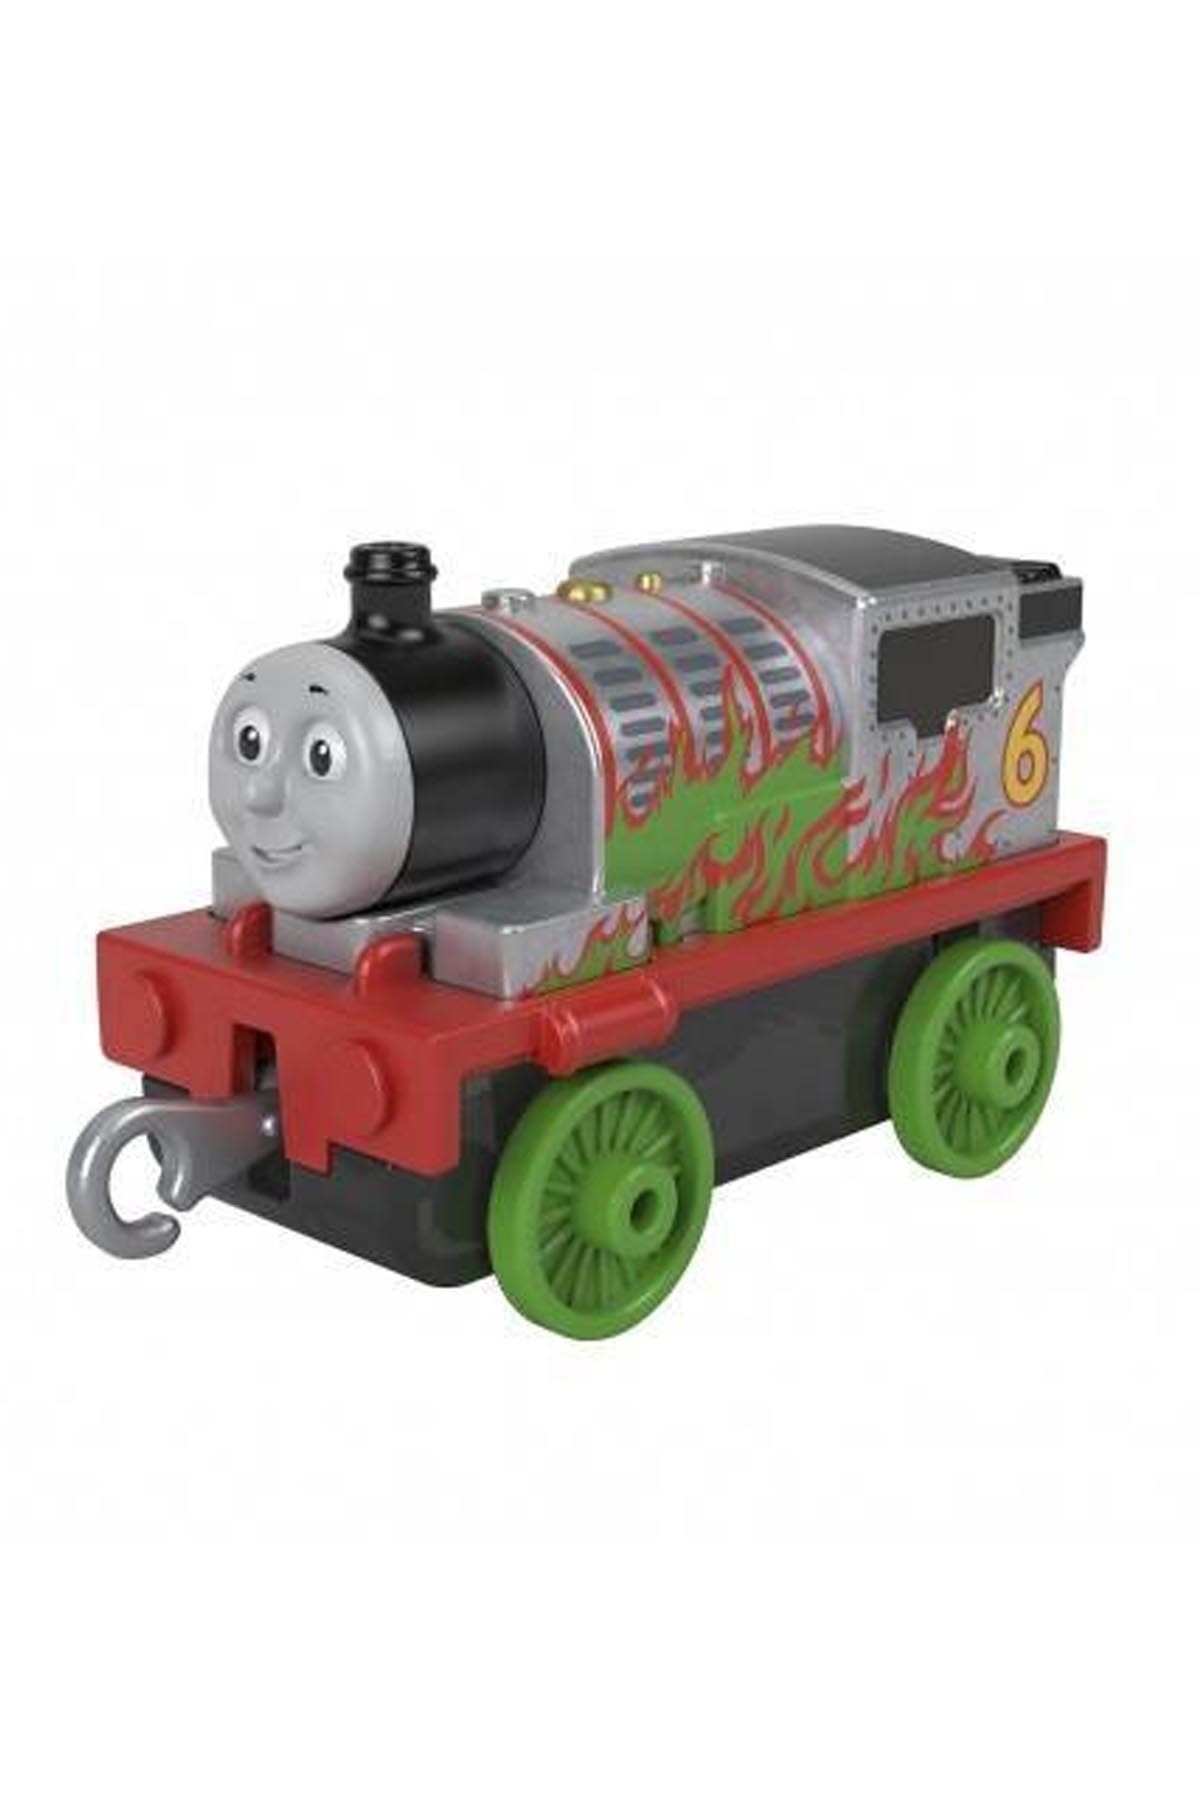 Thomas ve Arkadaşları Trackmaster Sür Bırak Küçük Tekli Trenler Percy GYV66